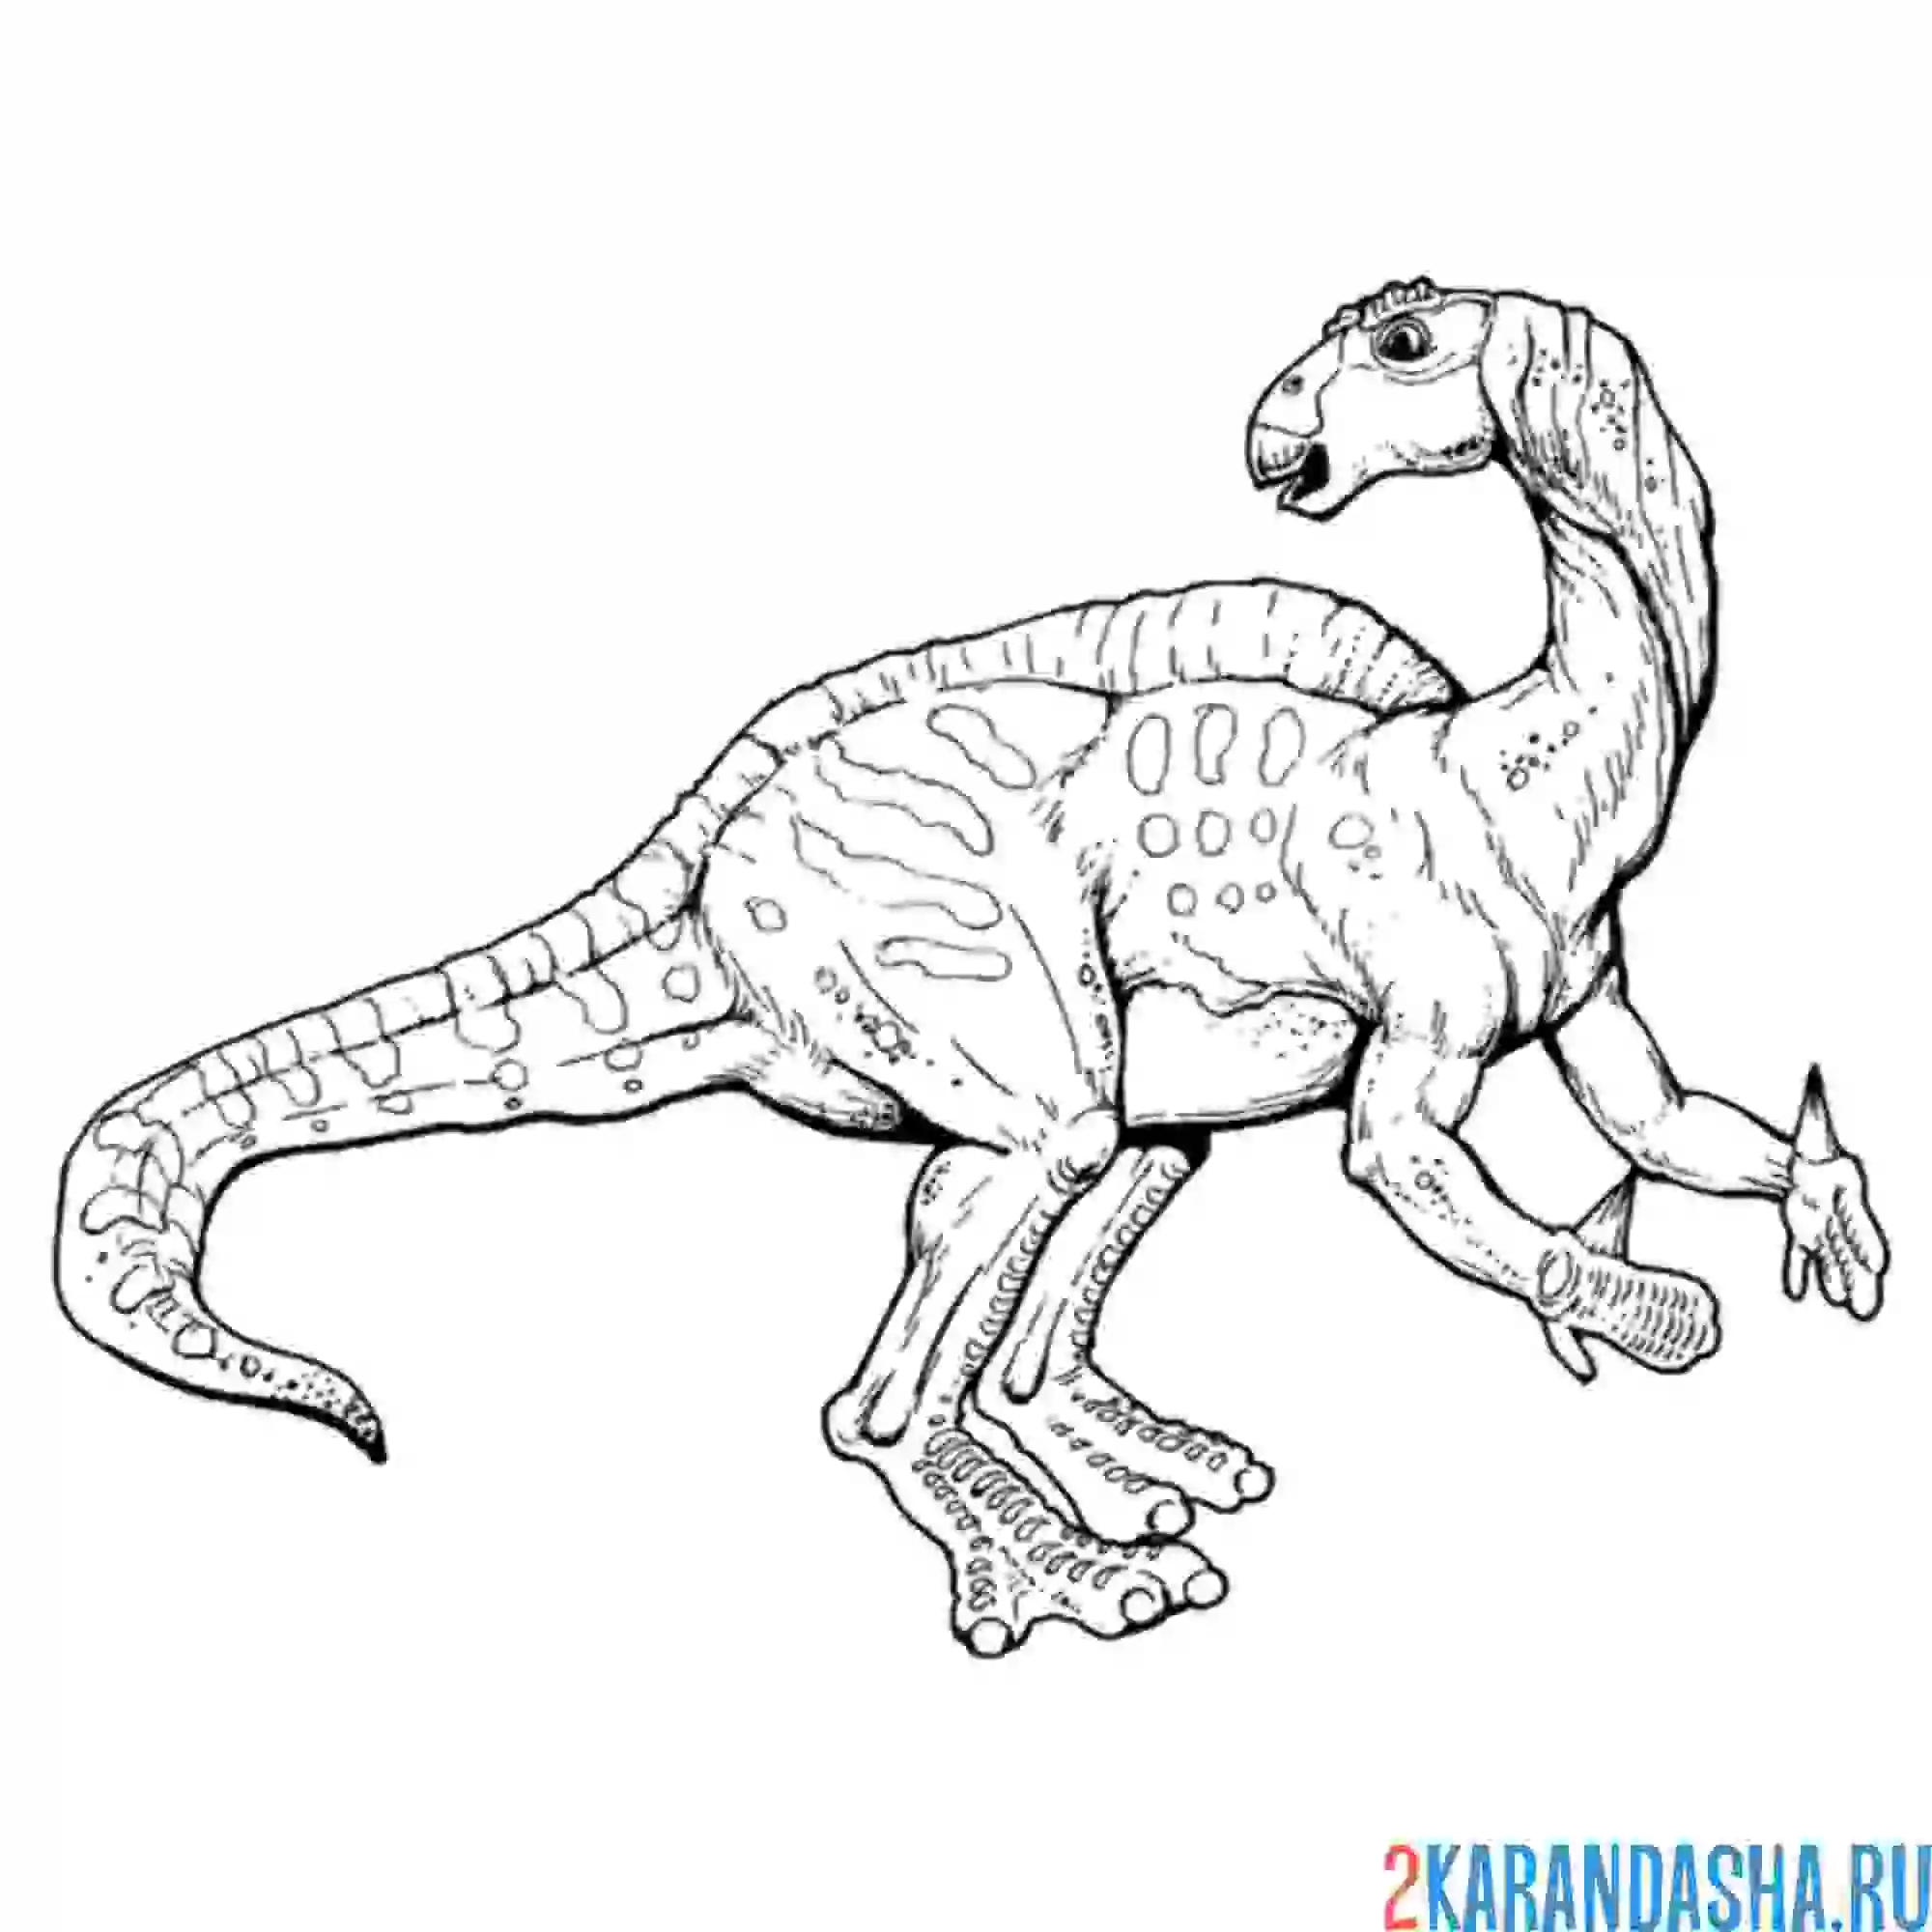 Раскраска динозавр формат а4. Тарбозавр раскраска динозавра. Игуанодон динозавр раскраска. Раскраски для детей Тарбозавр. Тарбозавр разукрашка.